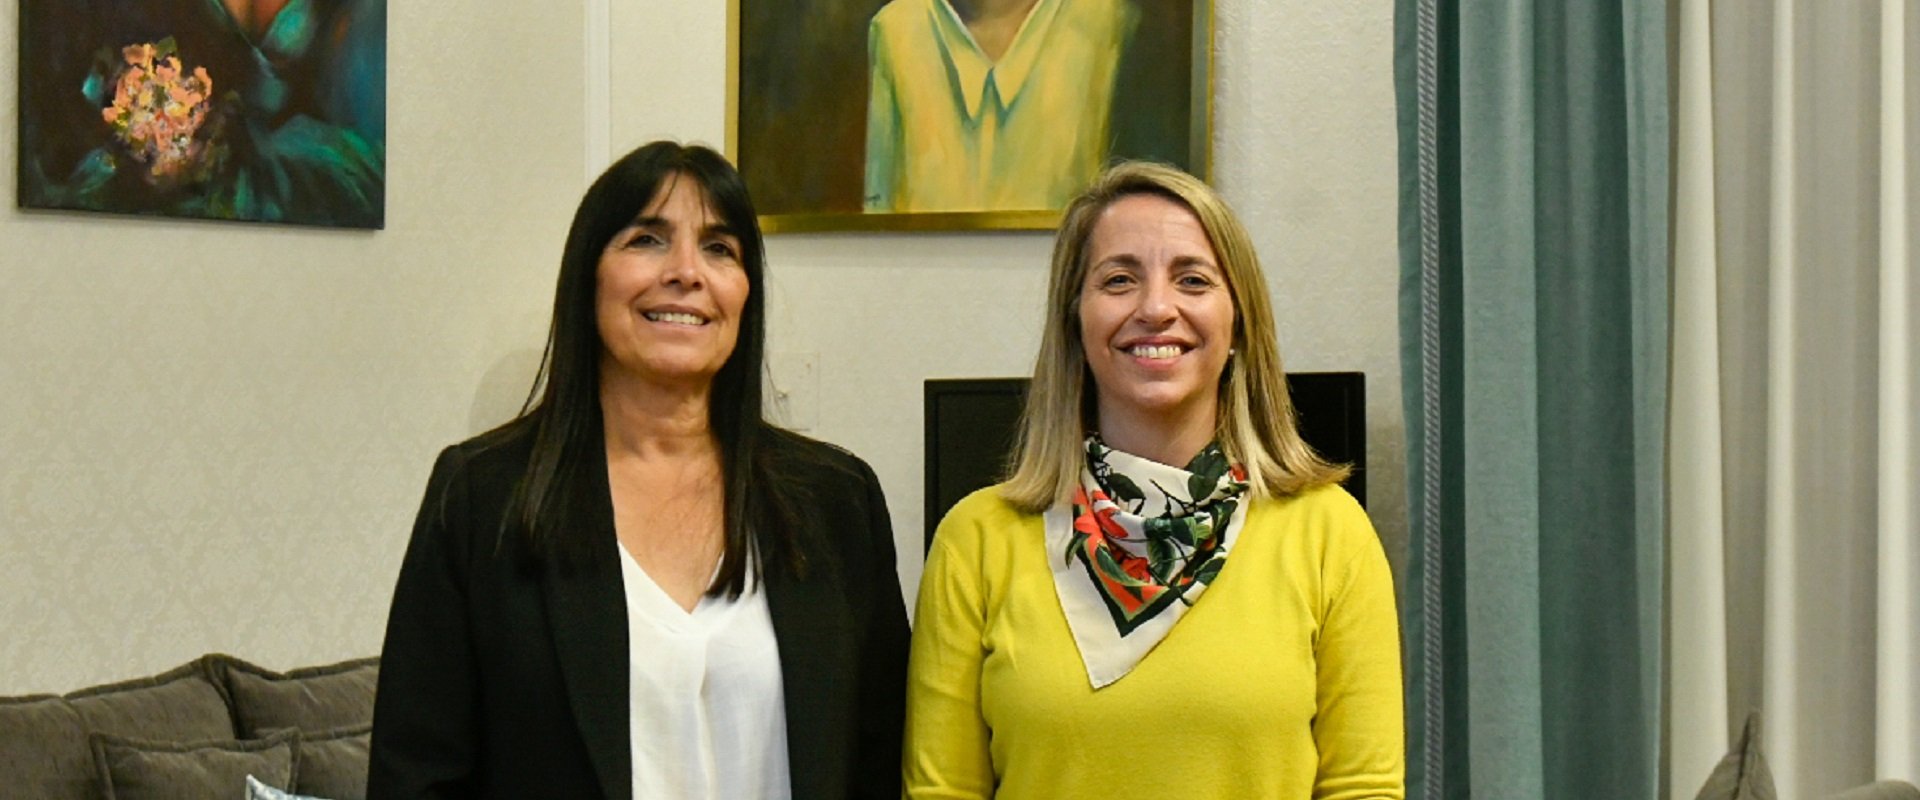 La vicegobernadora Laura Stratta y la electa, Alicia Aluani, se reunieron en el marco de la transición de gobierno